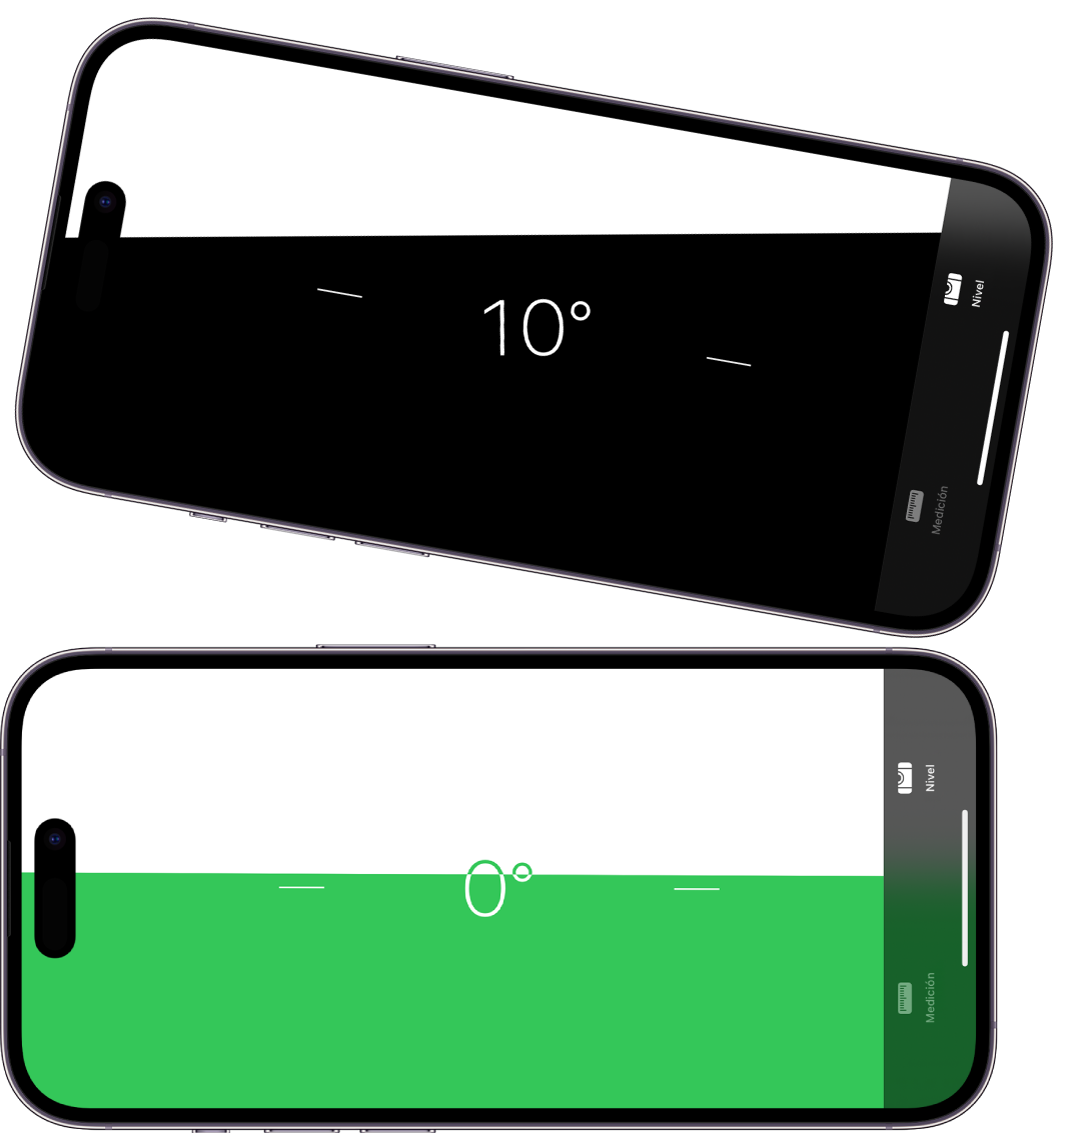 La pantalla de nivelación de la app Medición. En la parte superior, el iPhone está inclinado a un ángulo de 10 grados; en la parte inferior, el iPhone está nivelado.